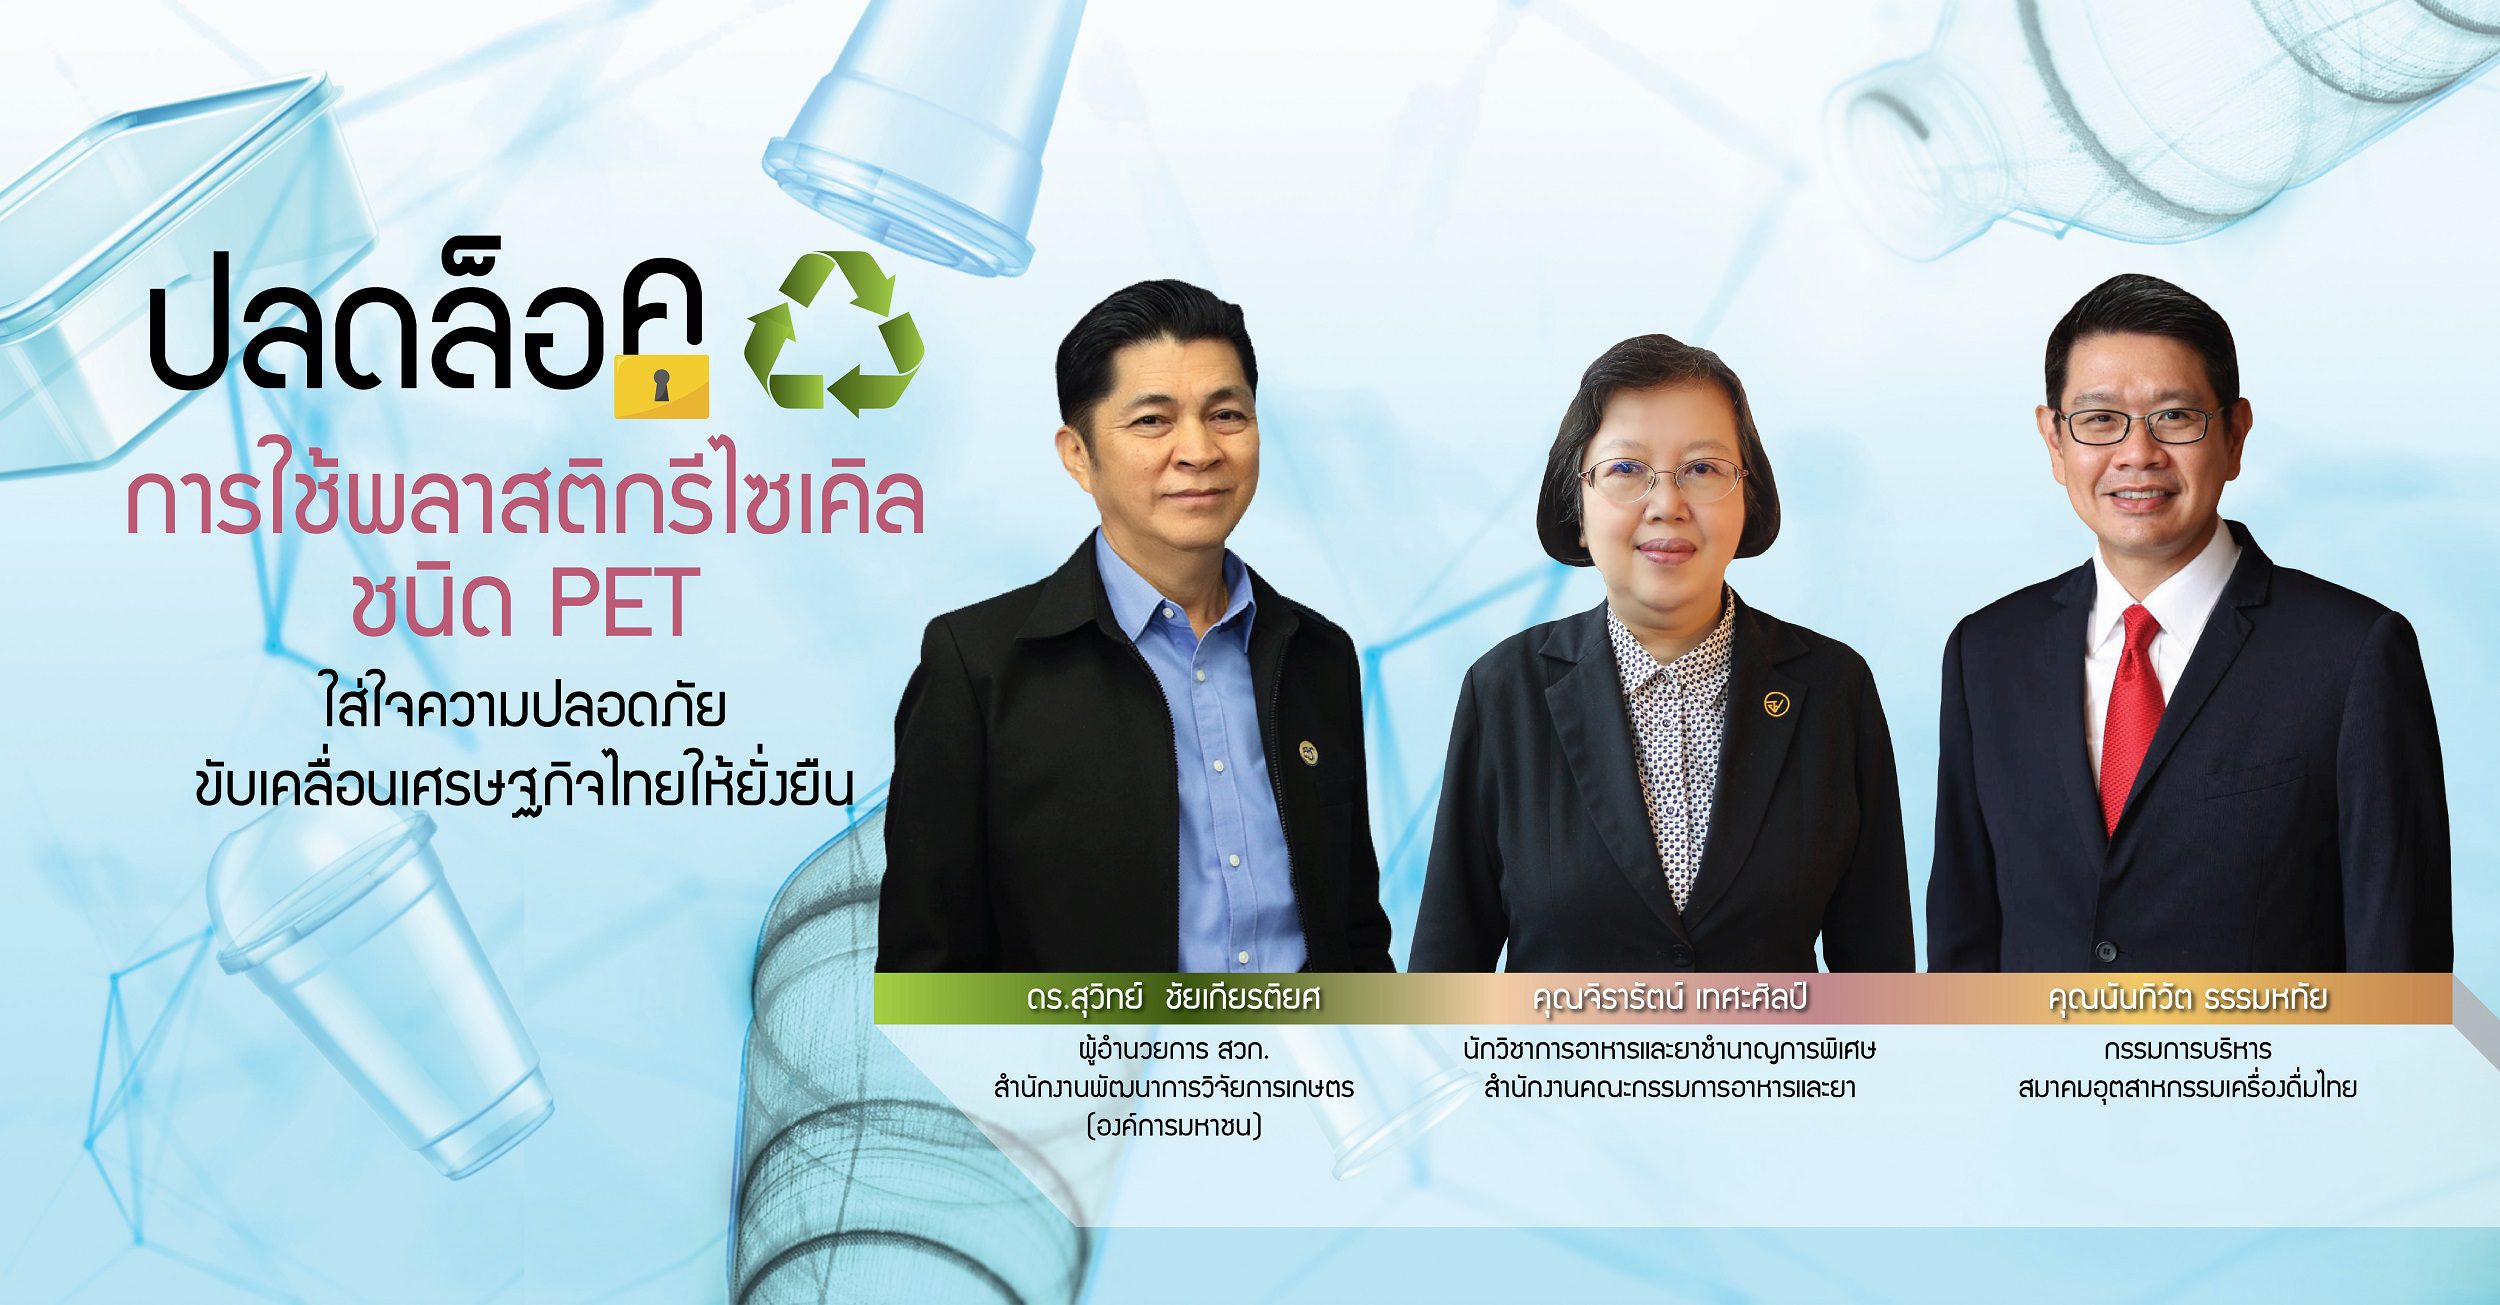 ปลดล็อก…การใช้พลาสติกรีไซเคิล ใส่ใจความปลอดภัย ขับเคลื่อนเศรษฐกิจไทยให้ยั่งยืน